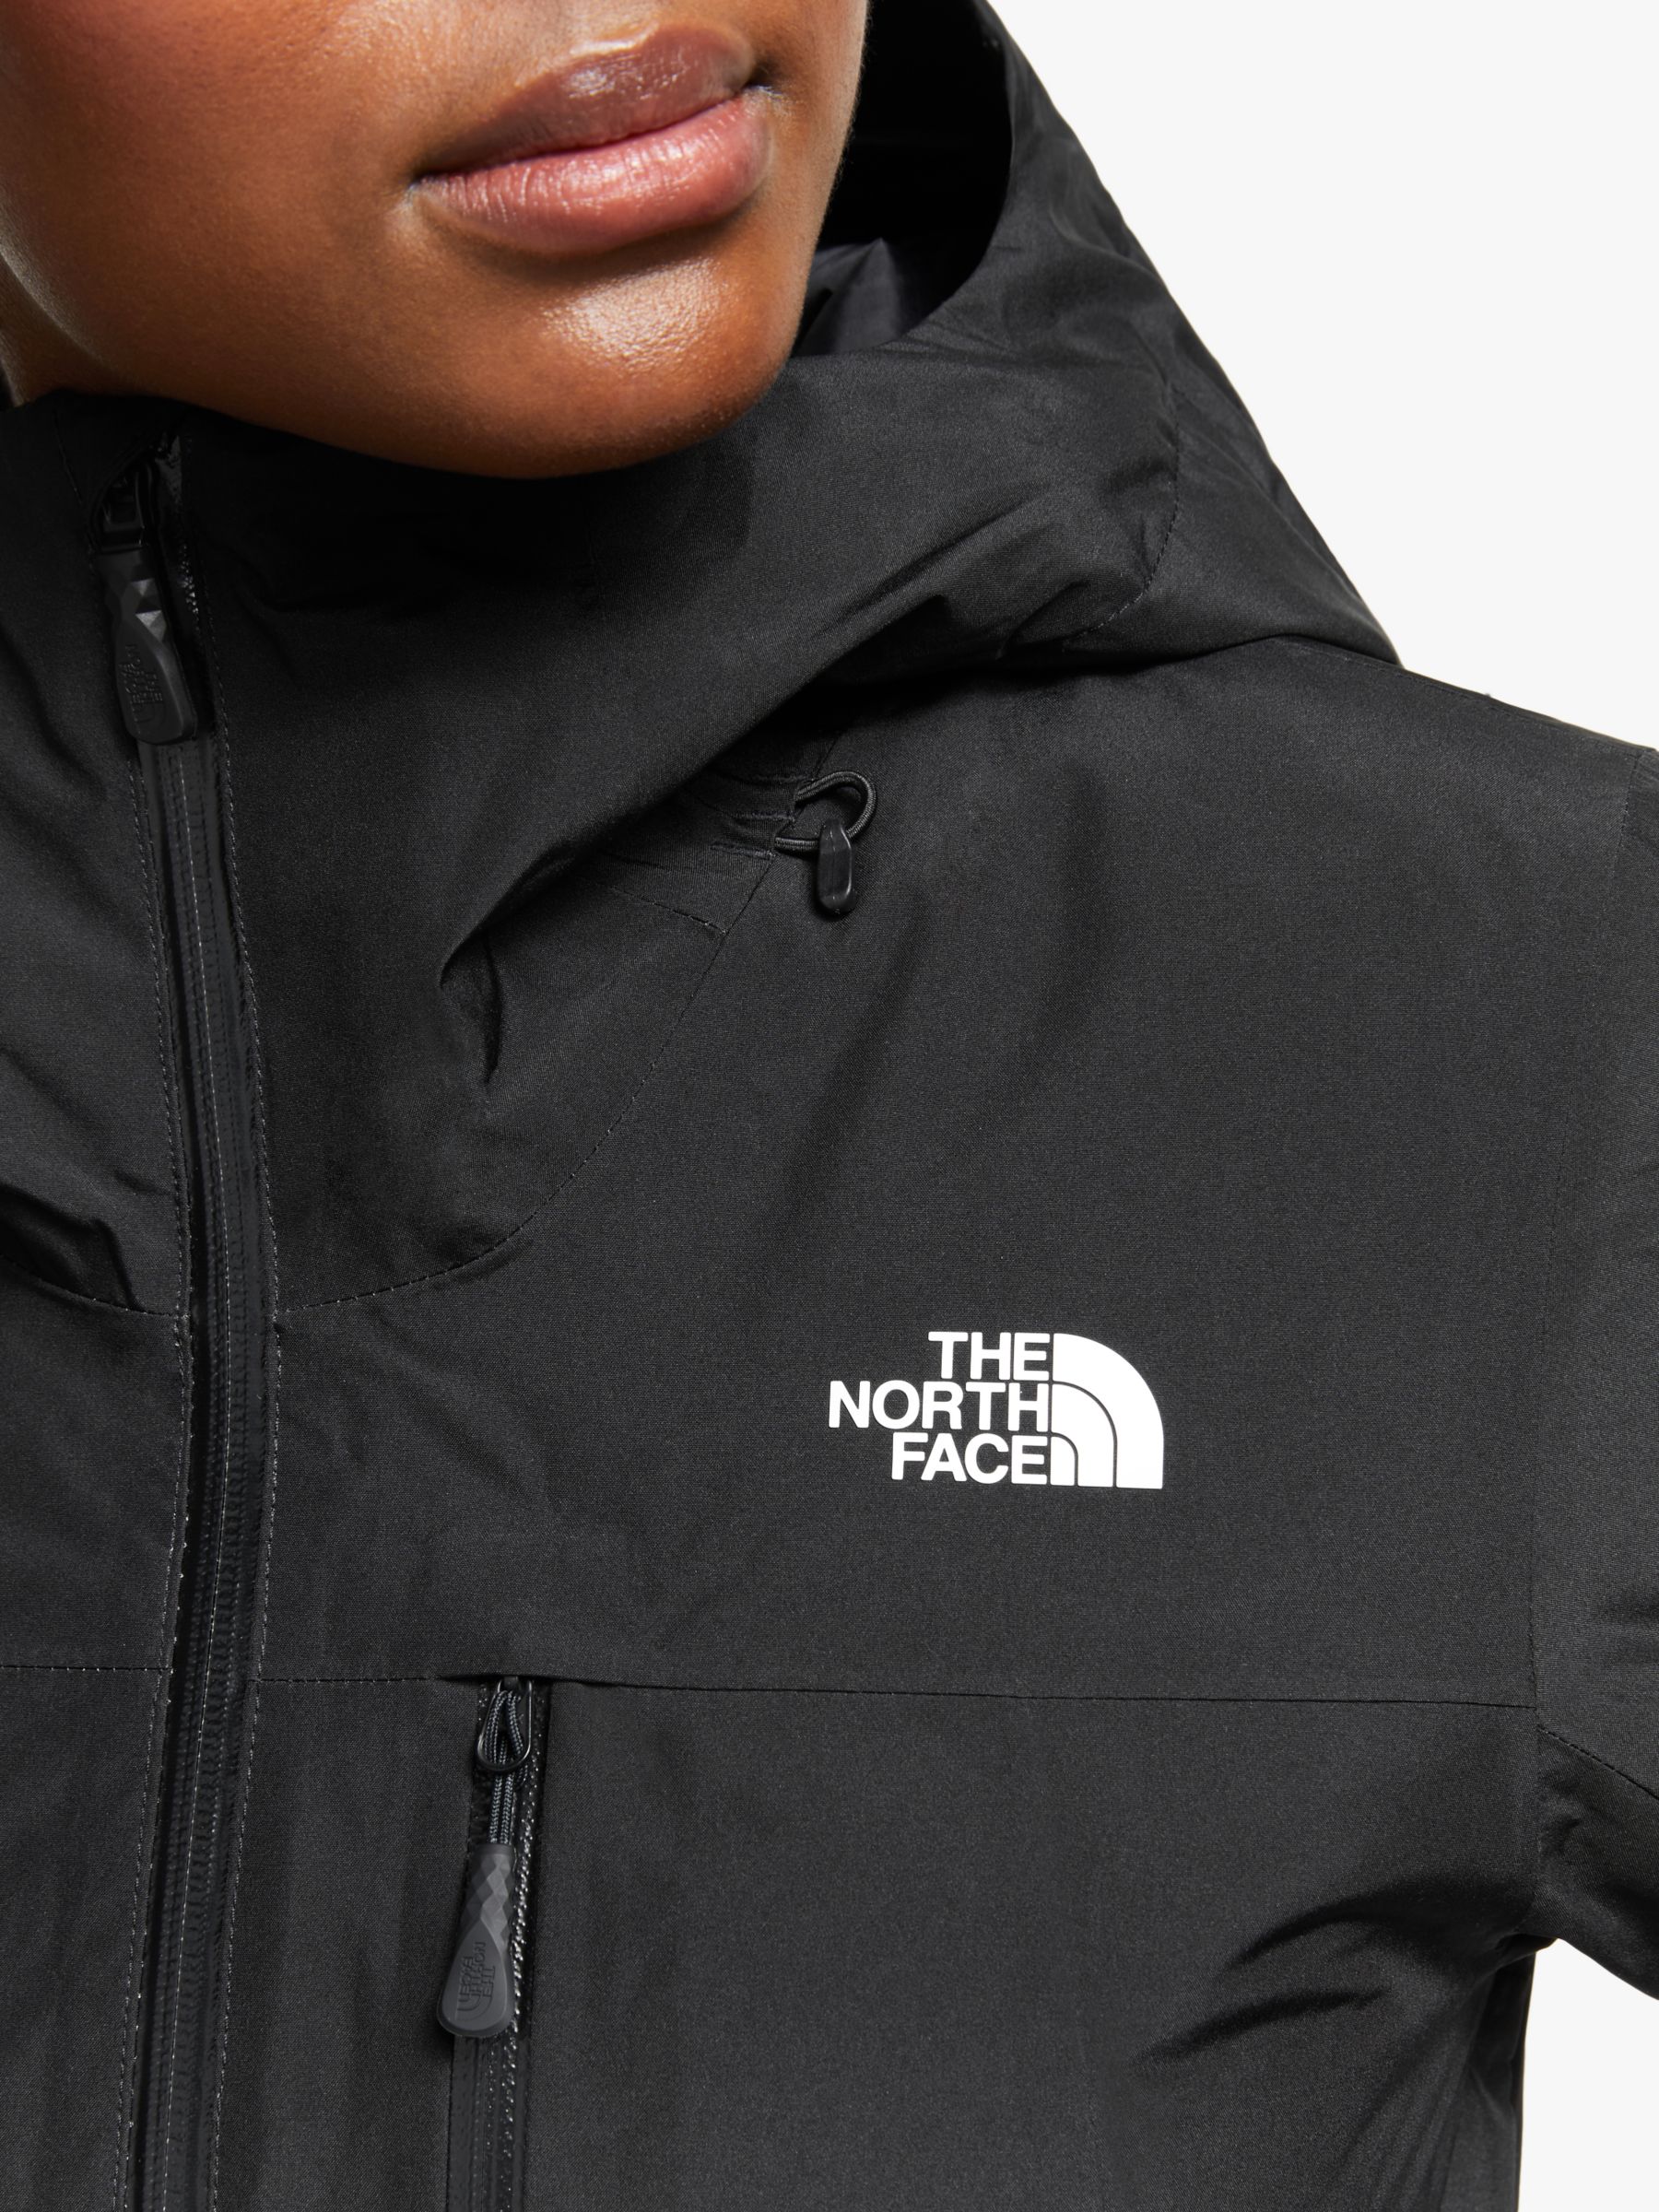 north face women's descendit jacket review